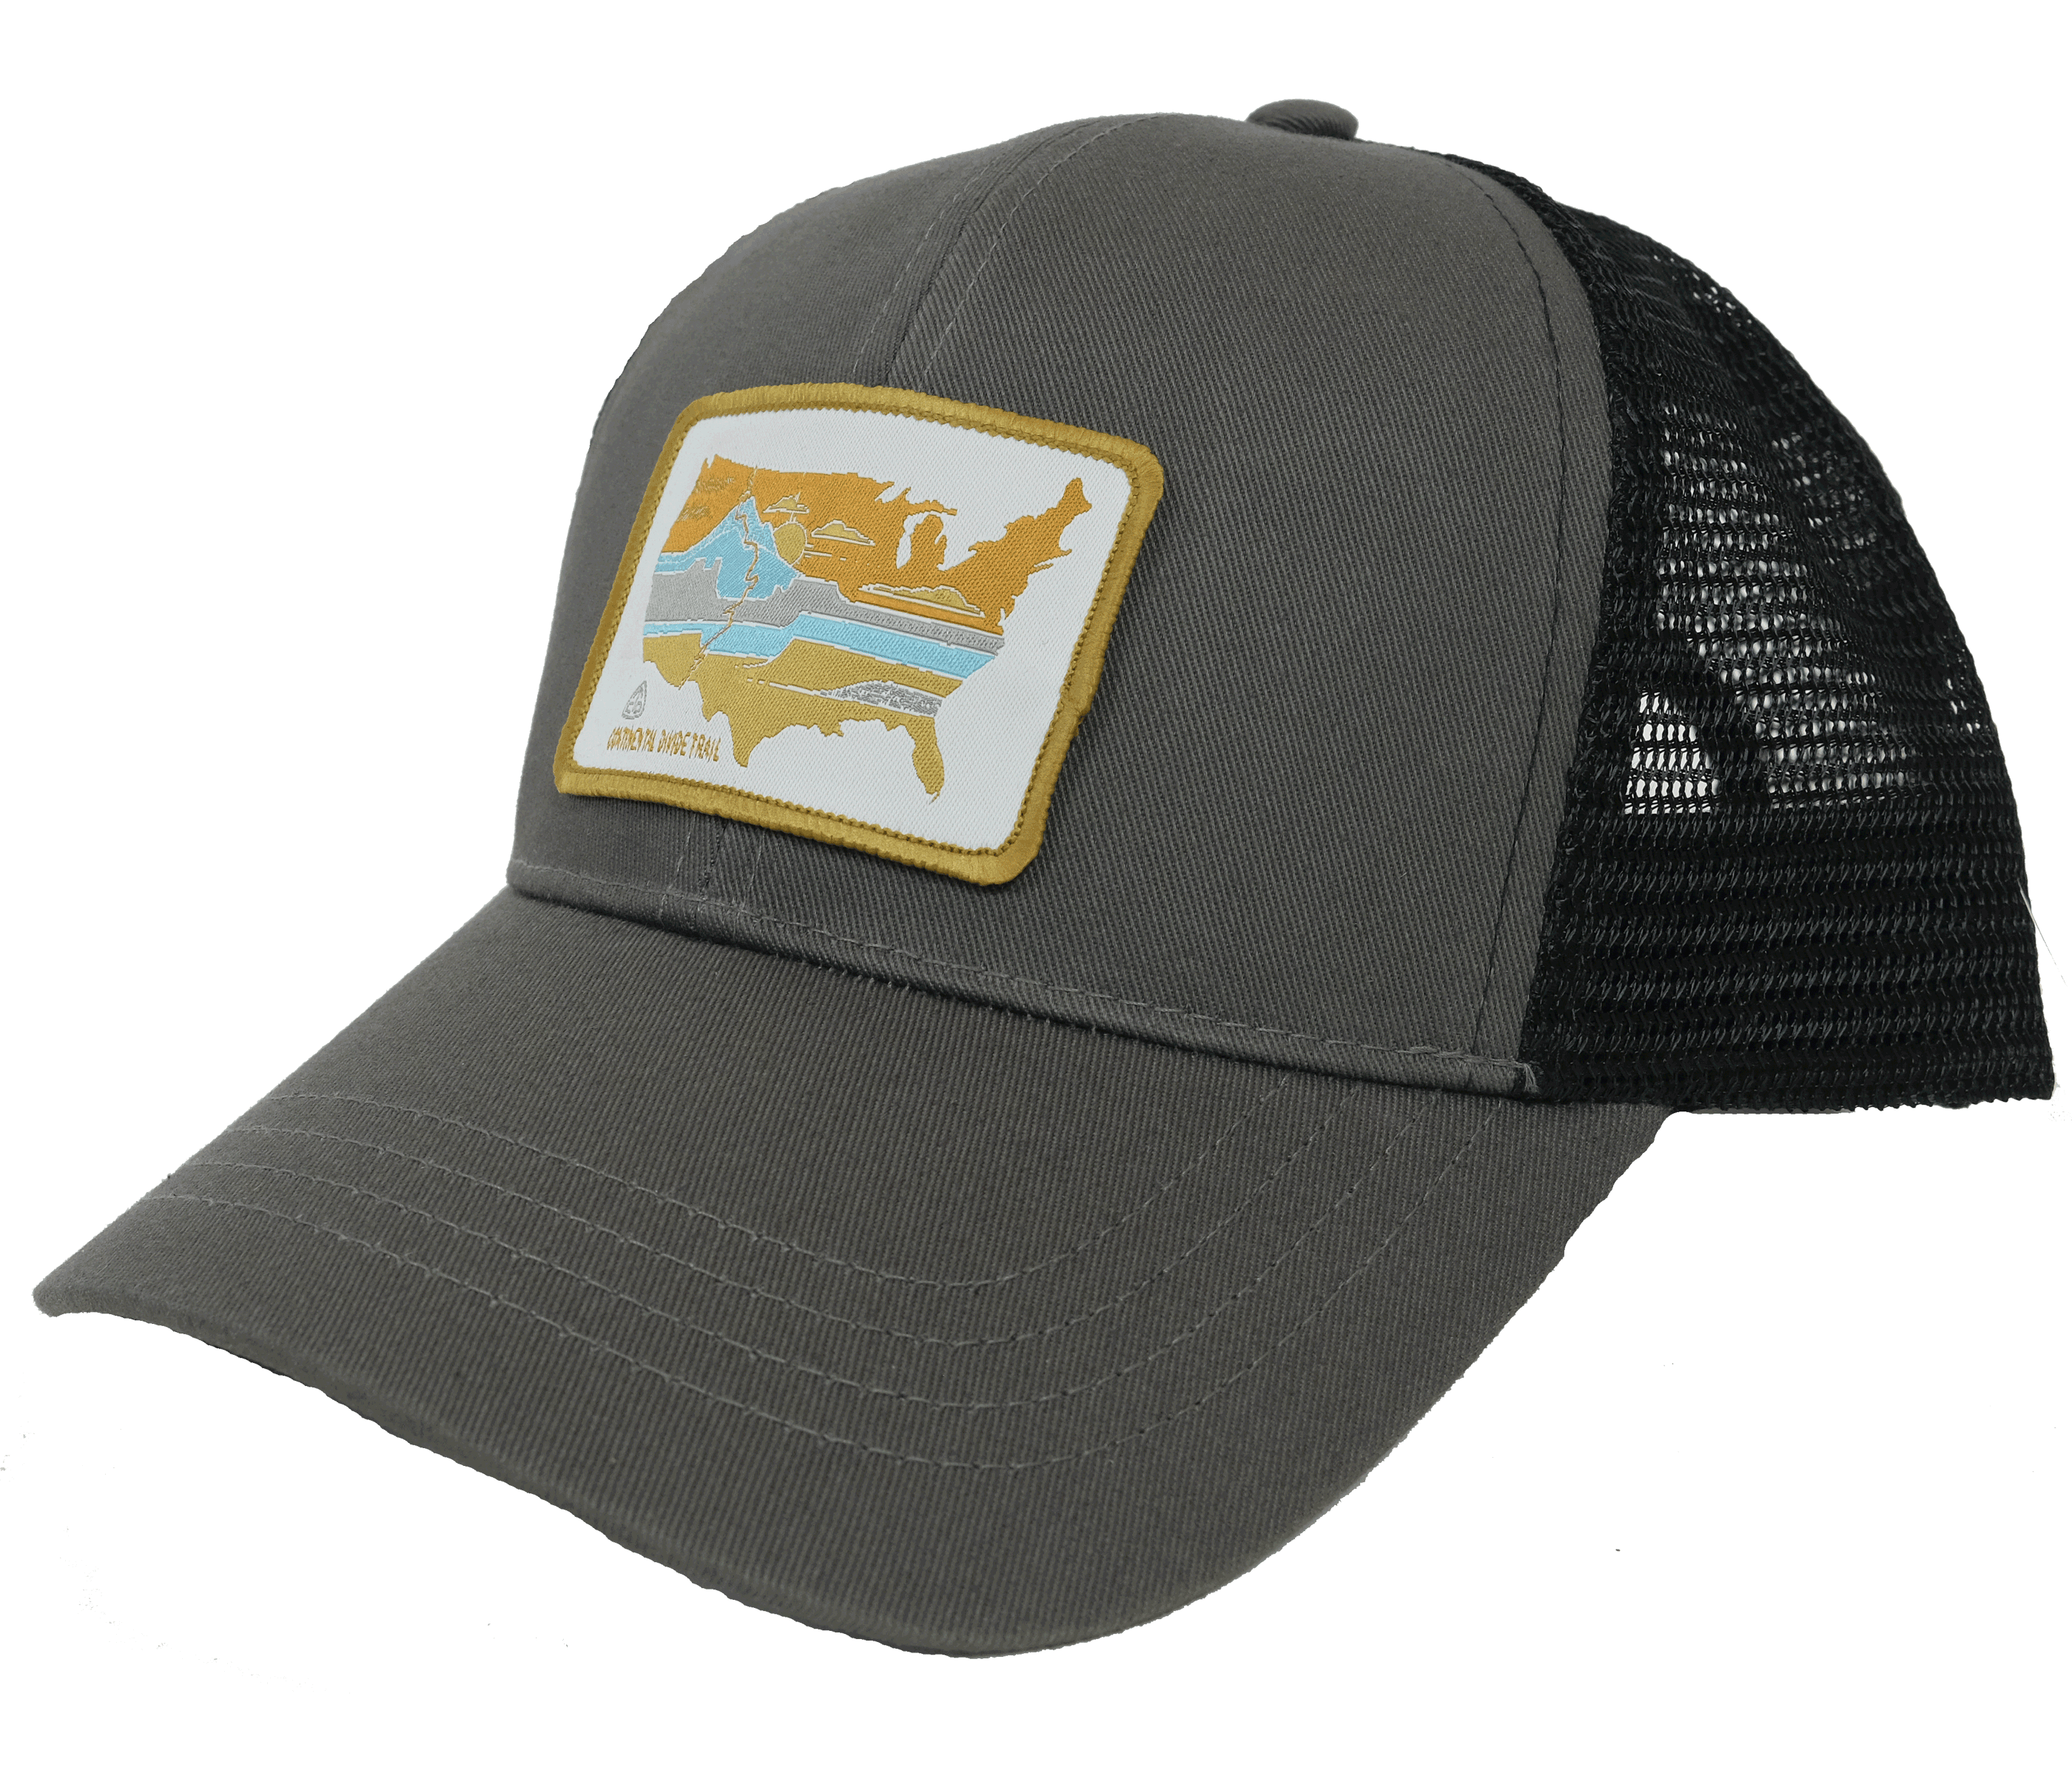 Continental Divide Trail CDT trucker hat